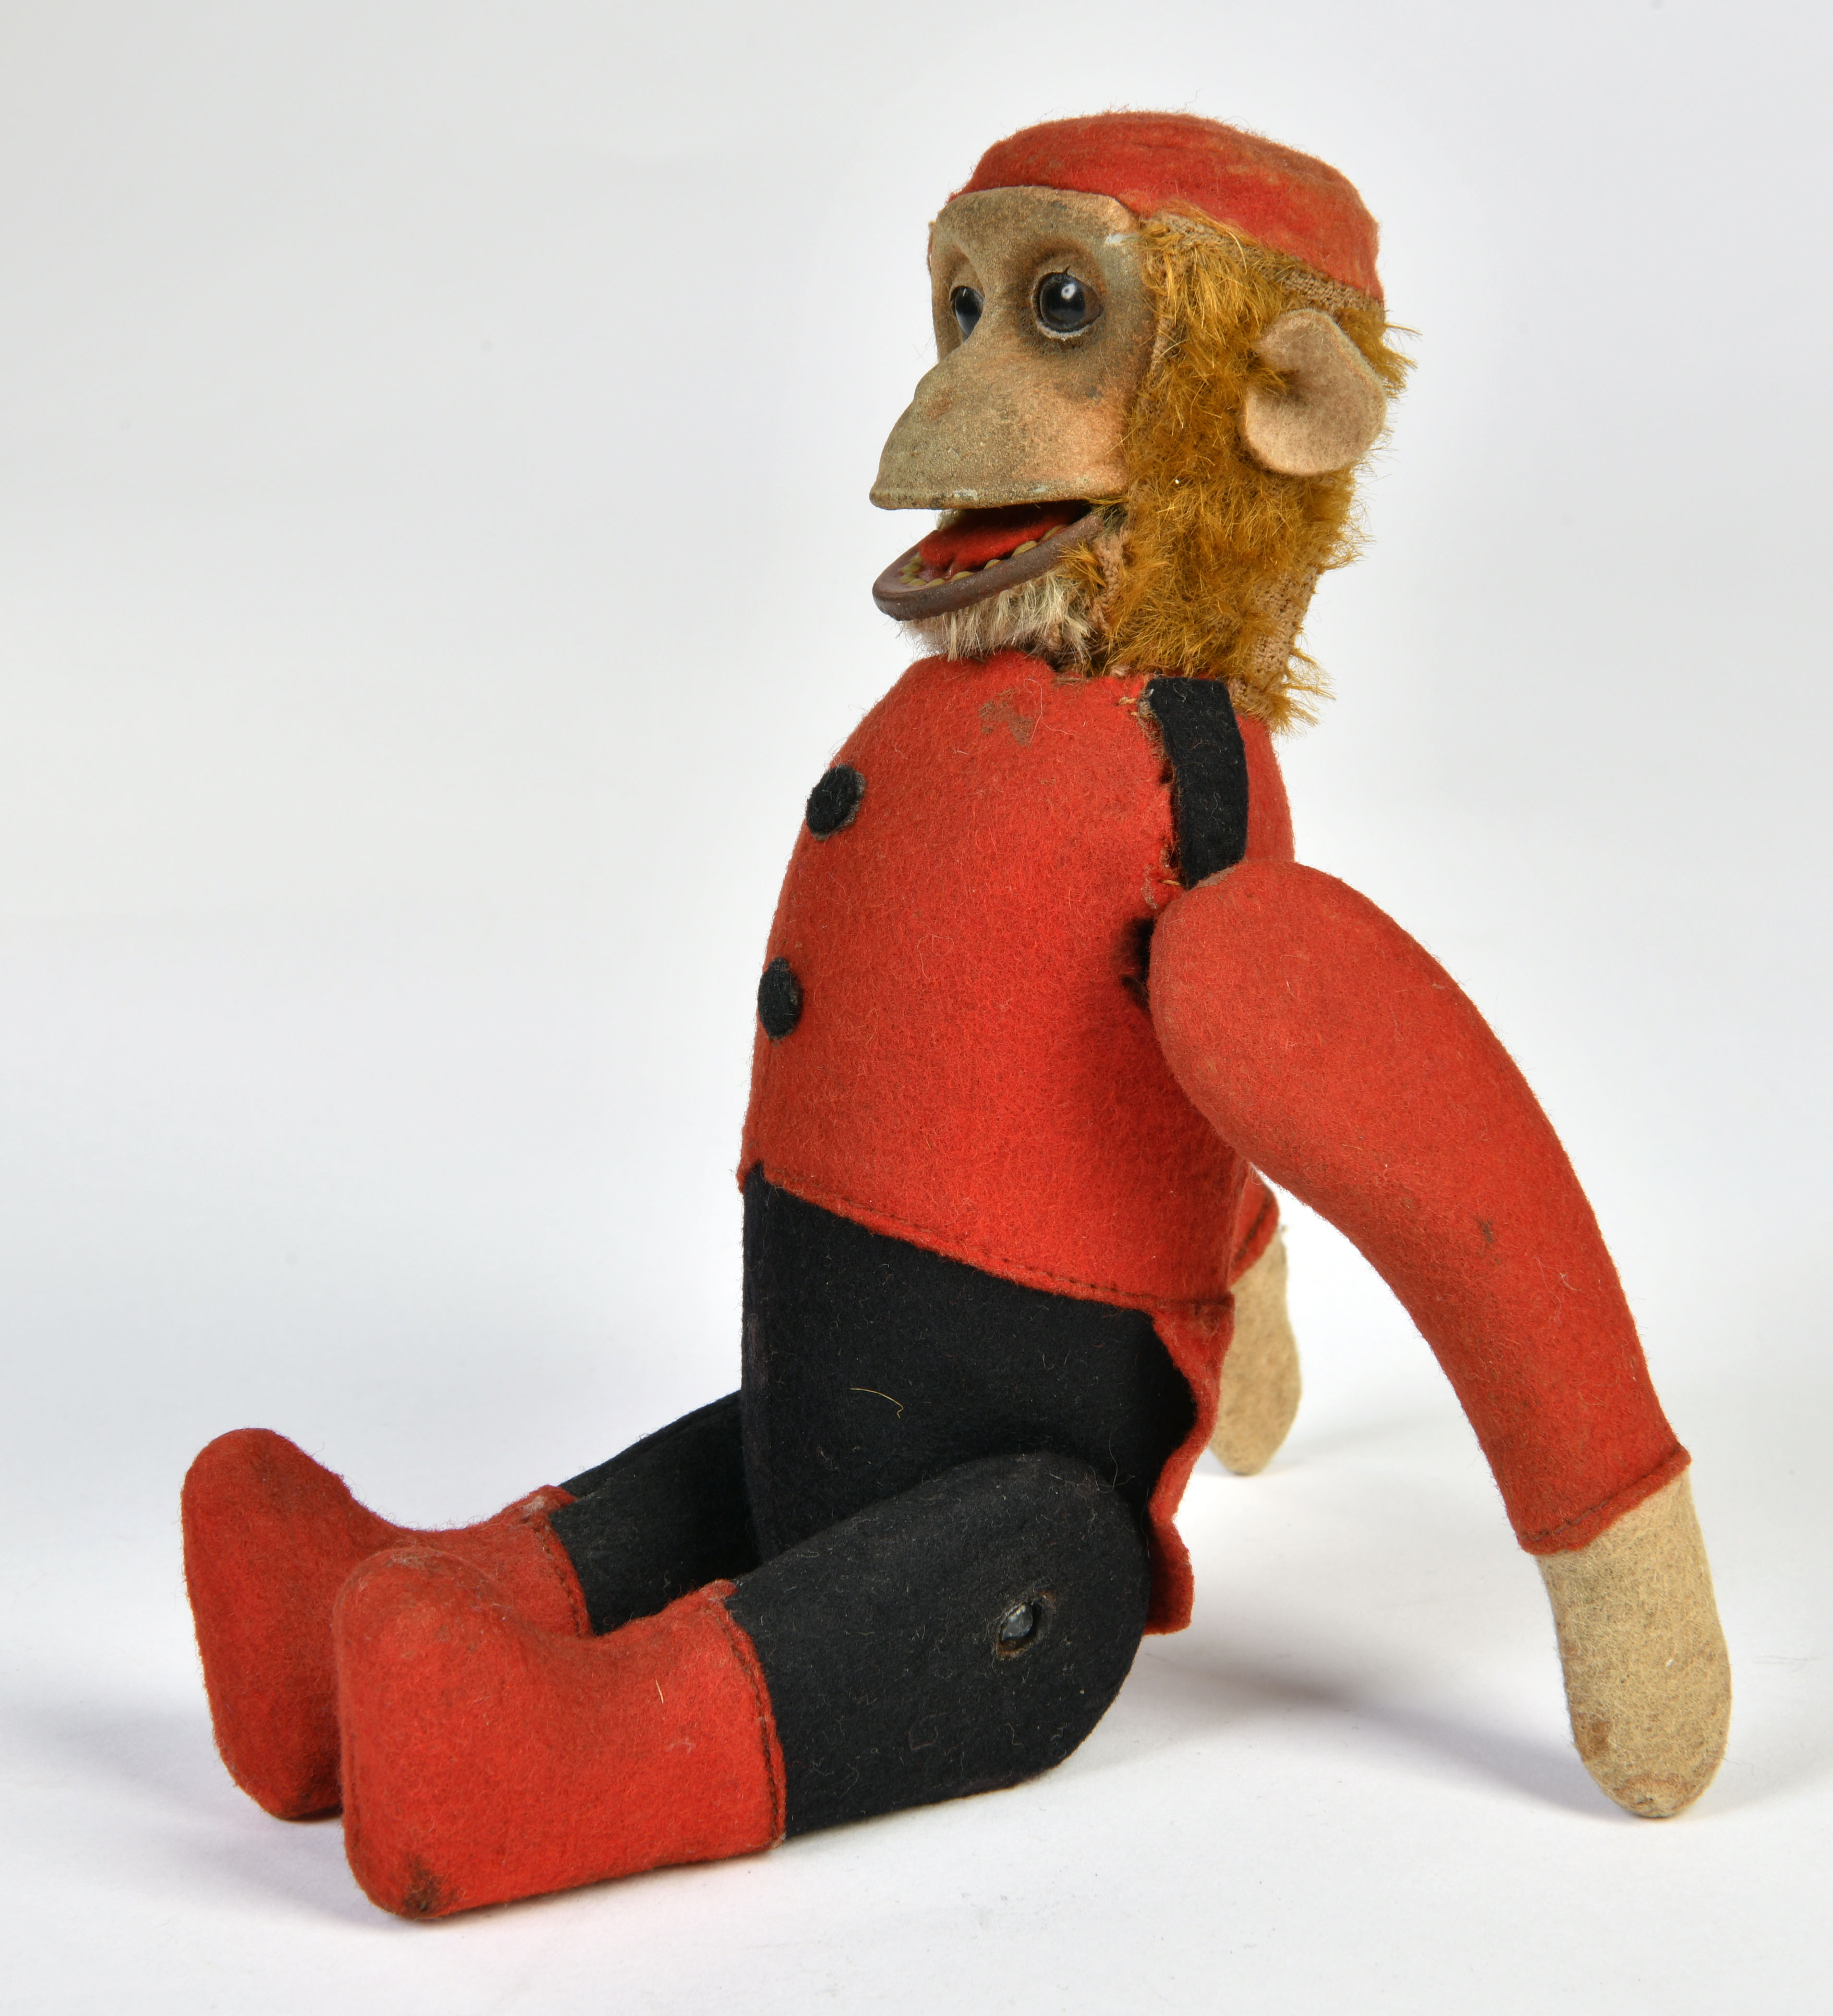 Schuco, tumbling monkey, Germany pw, 21 cm, function ok, felt damaged, otherwise C 1-2 - Image 2 of 2